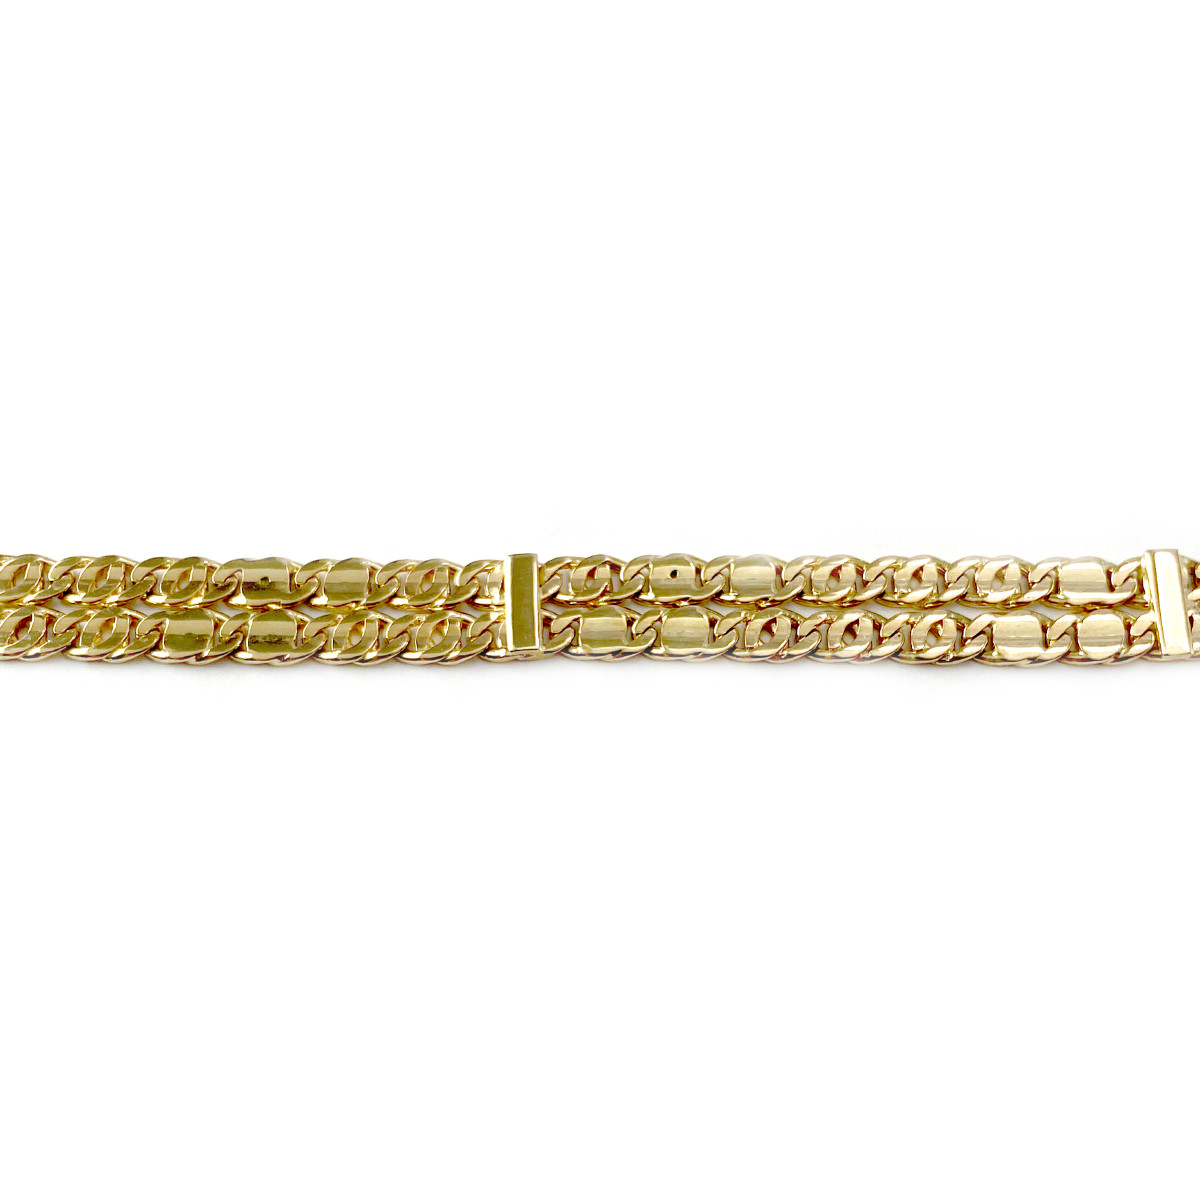 Bracelet d'occasion or 750 jaune double rang maille fantaisie 19 cm - vue 3